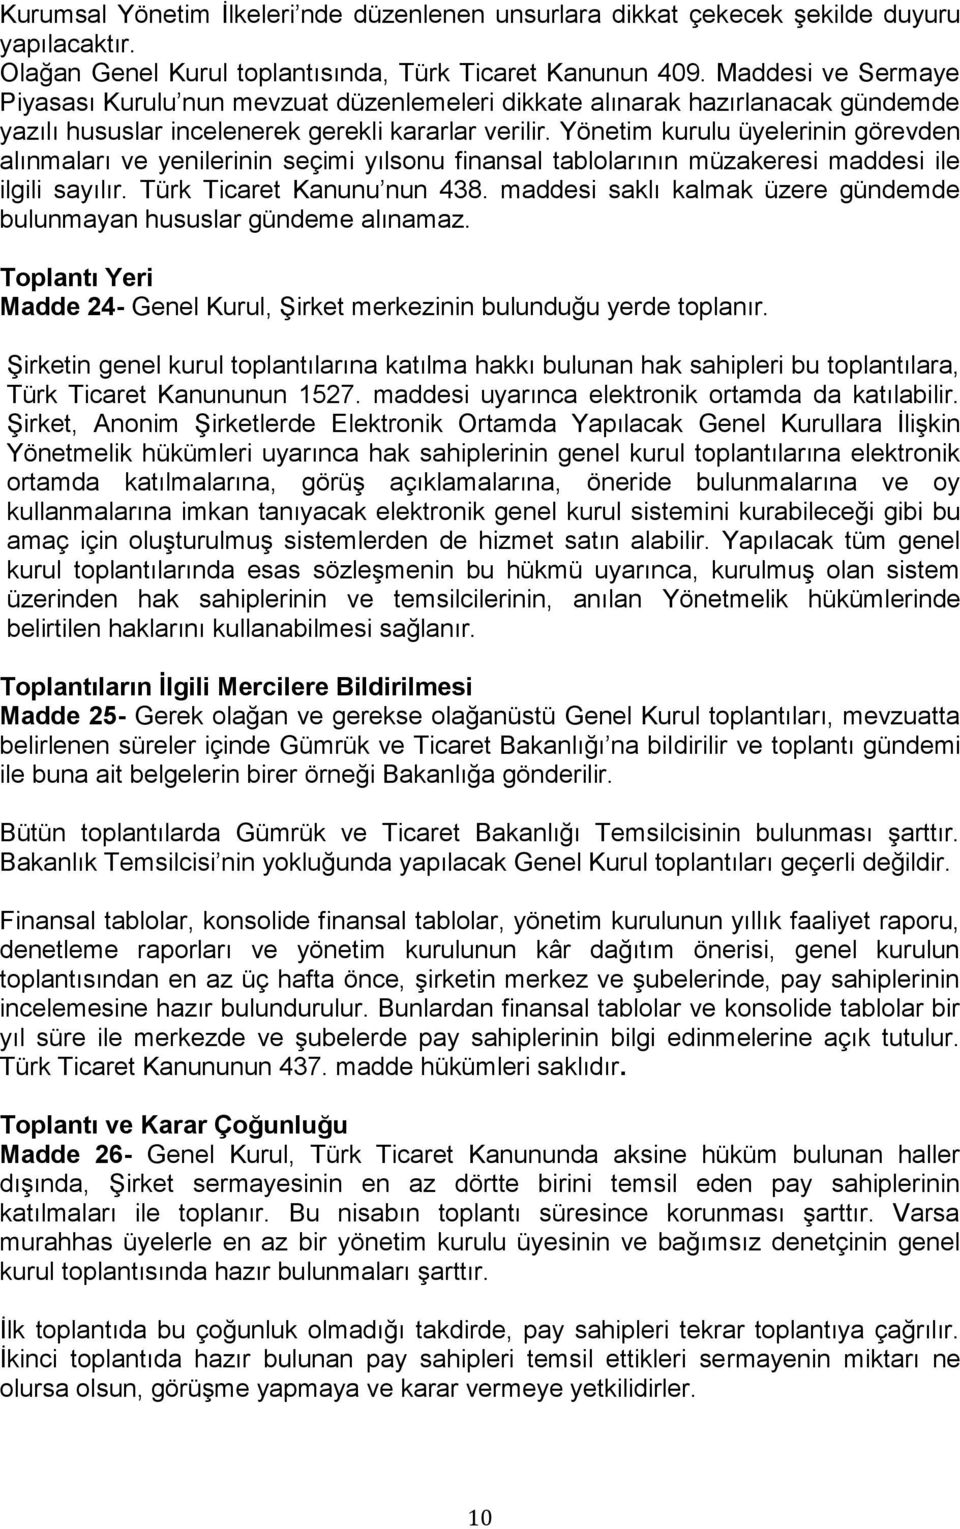 Yönetim kurulu üyelerinin görevden alınmaları ve yenilerinin seçimi yılsonu finansal tablolarının müzakeresi maddesi ile ilgili sayılır. Türk Ticaret Kanunu nun 438.